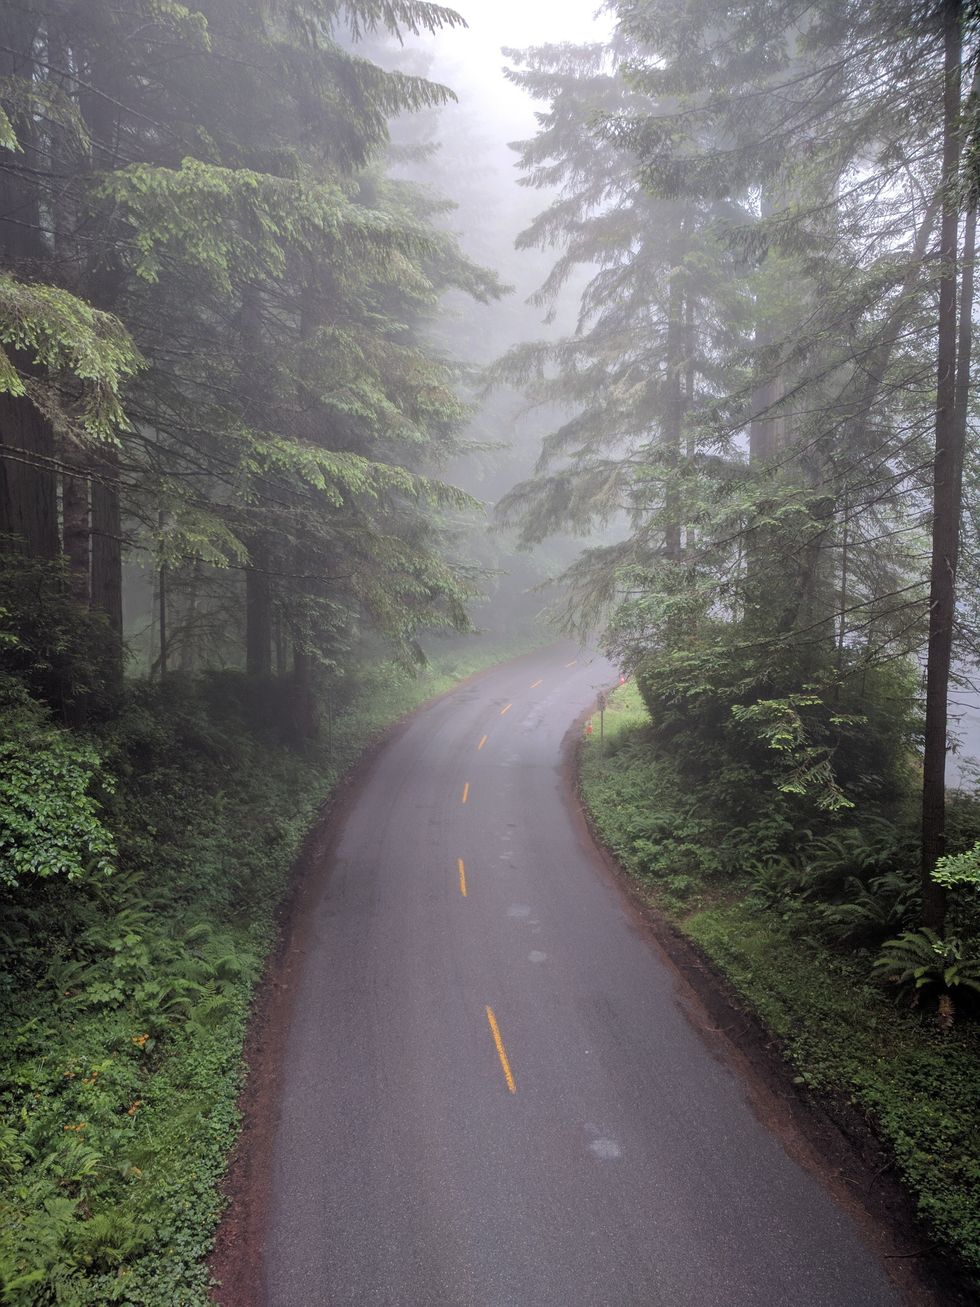 https://www.pexels.com/photo/empty-asphalt-road-between-trees-2682122/